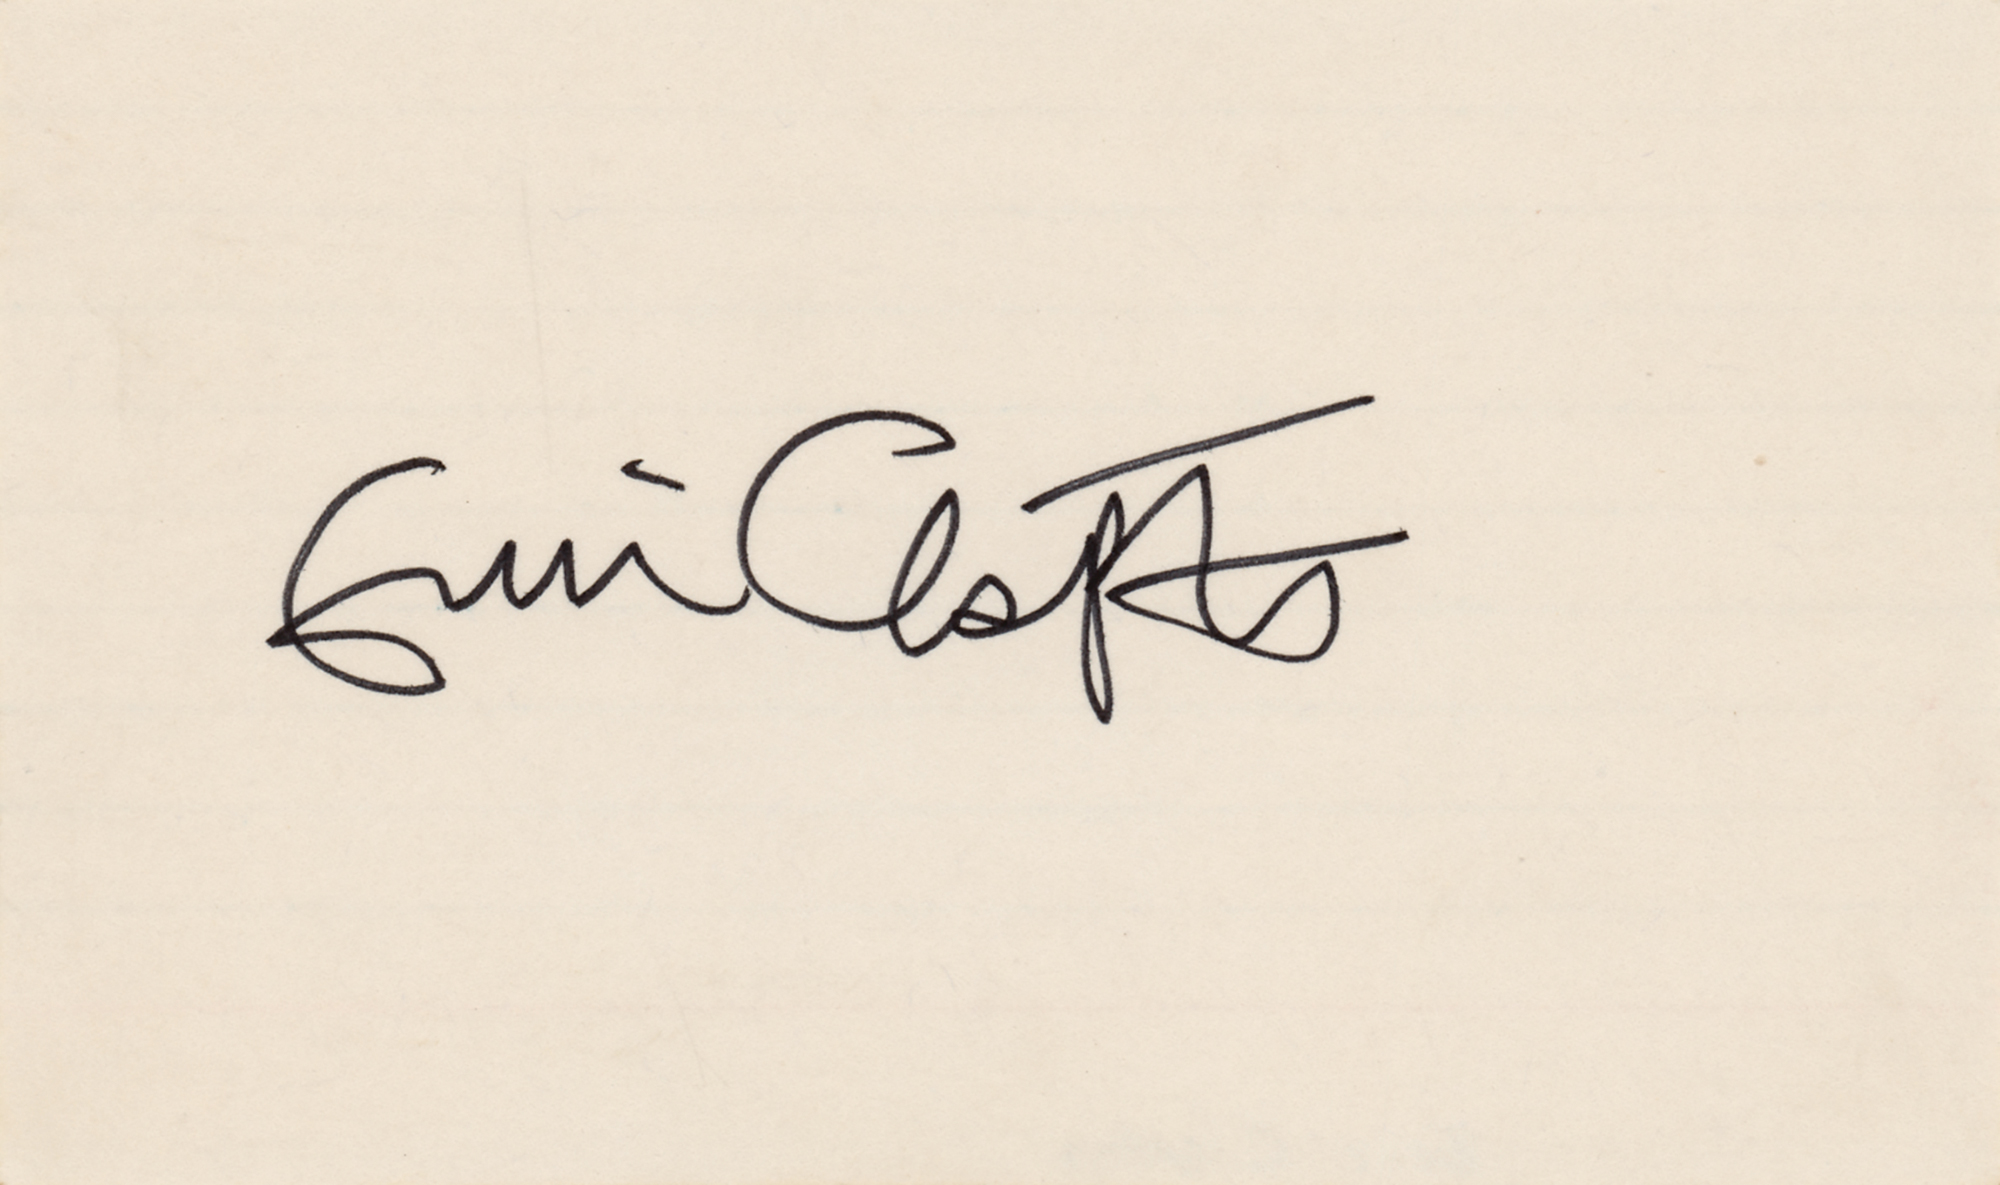 Lot #561 Eric Clapton Signature